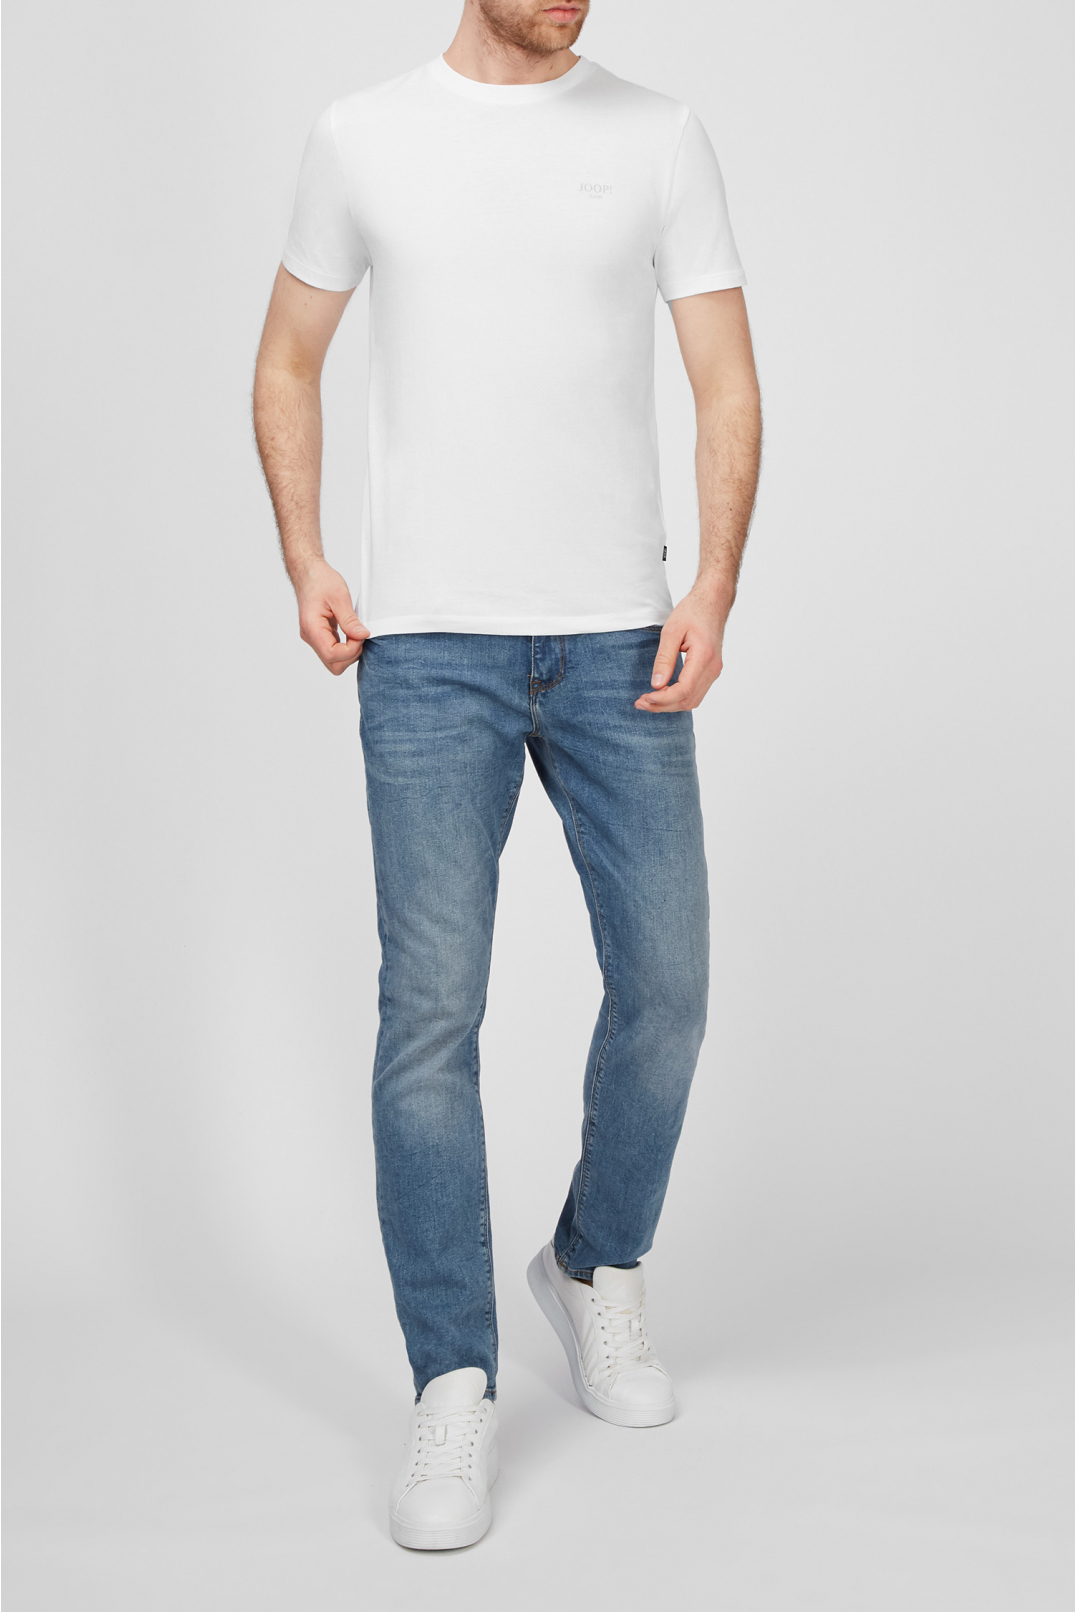 Мужская белая футболка - 5